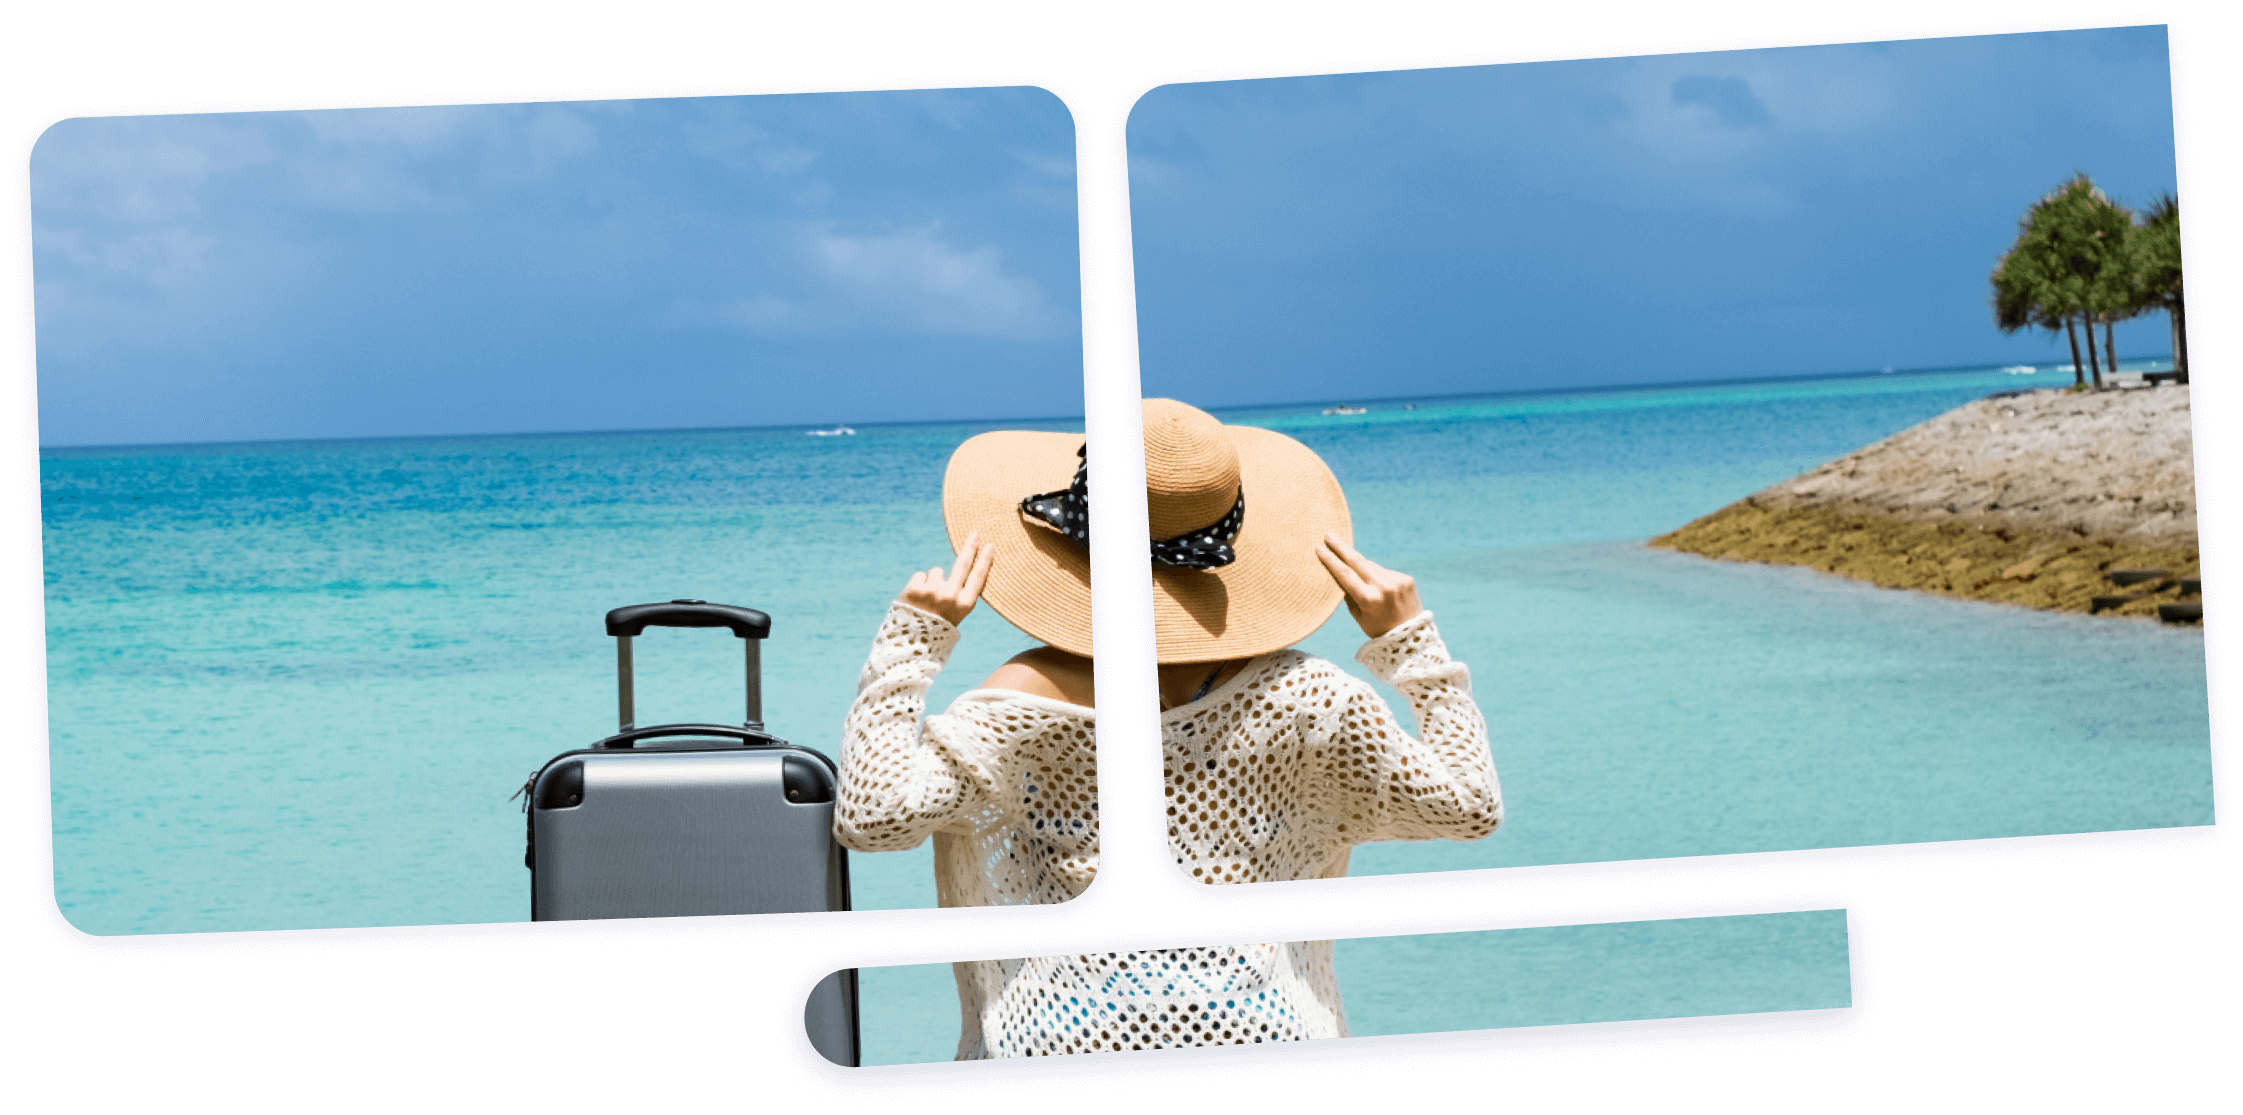 Imagem de uma senhora de mala a olhar o mar num local paradisíaco